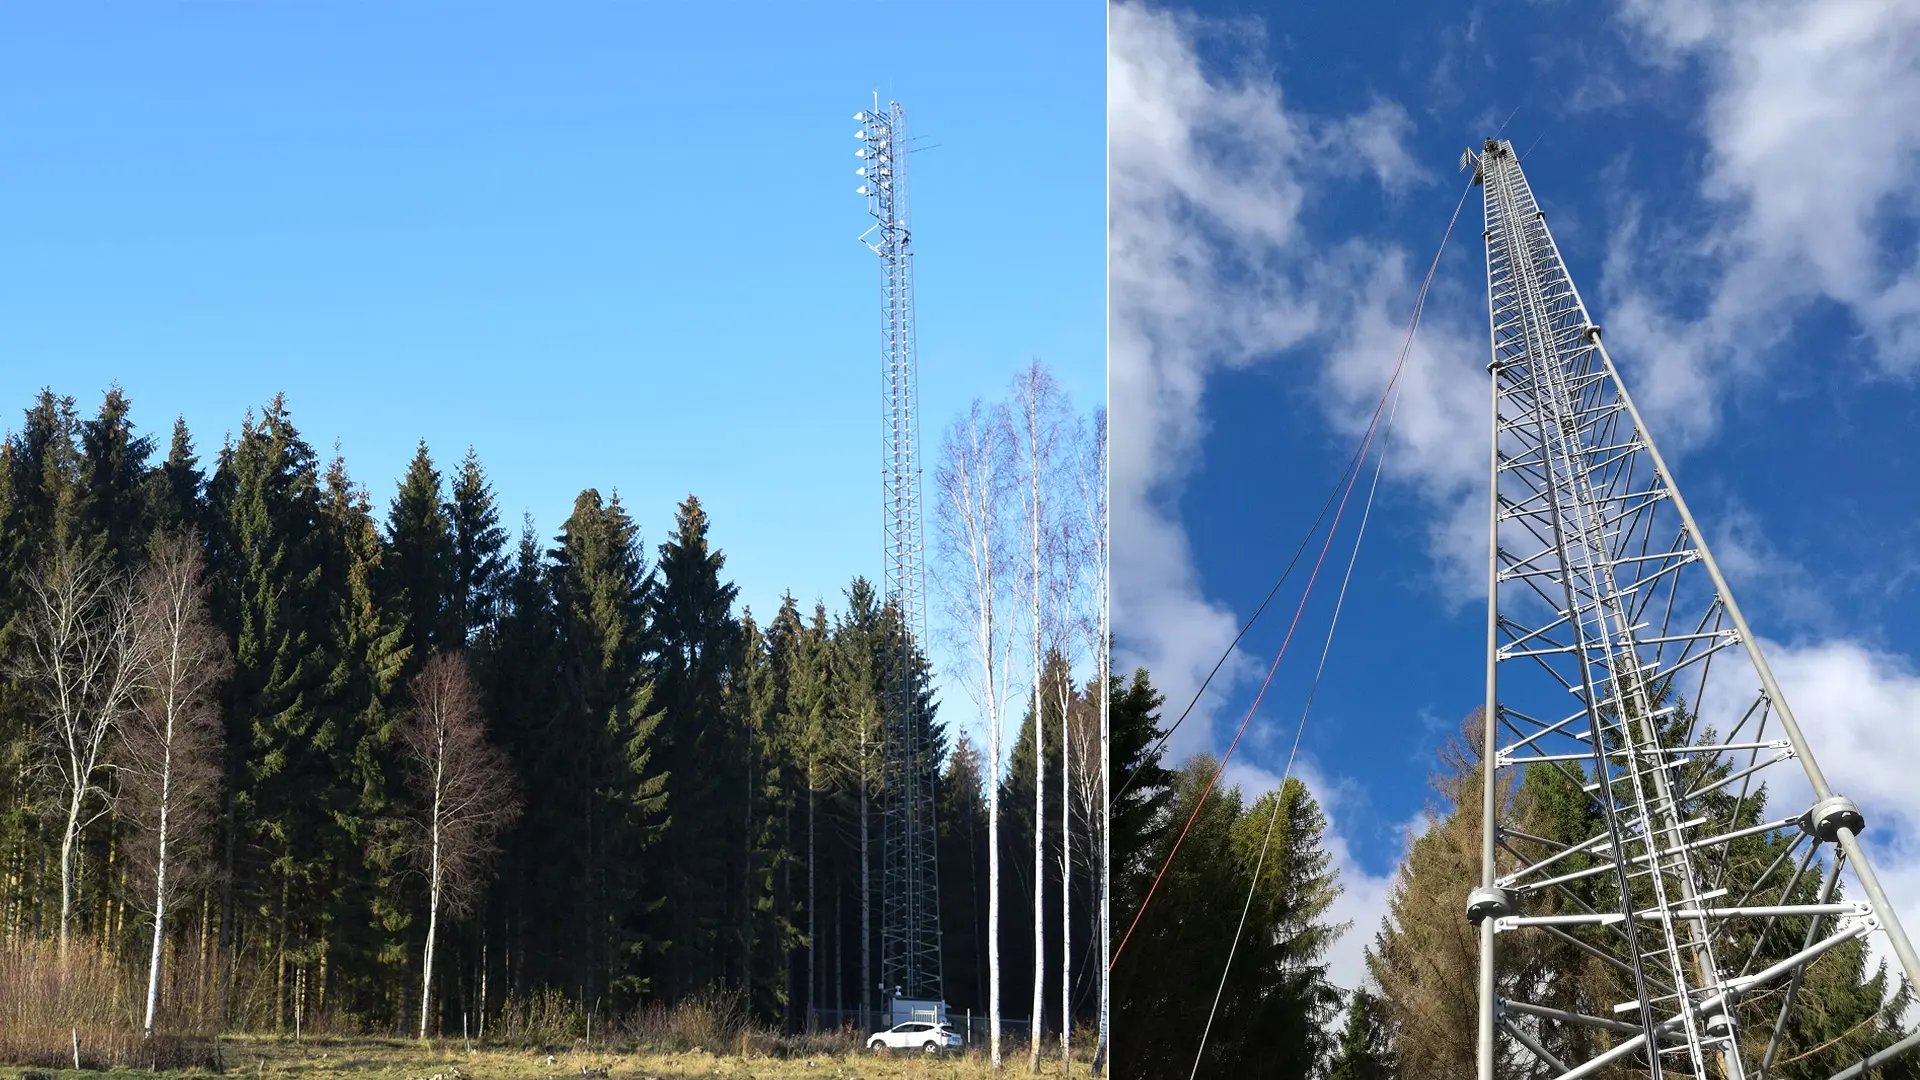 Radar tower in forest